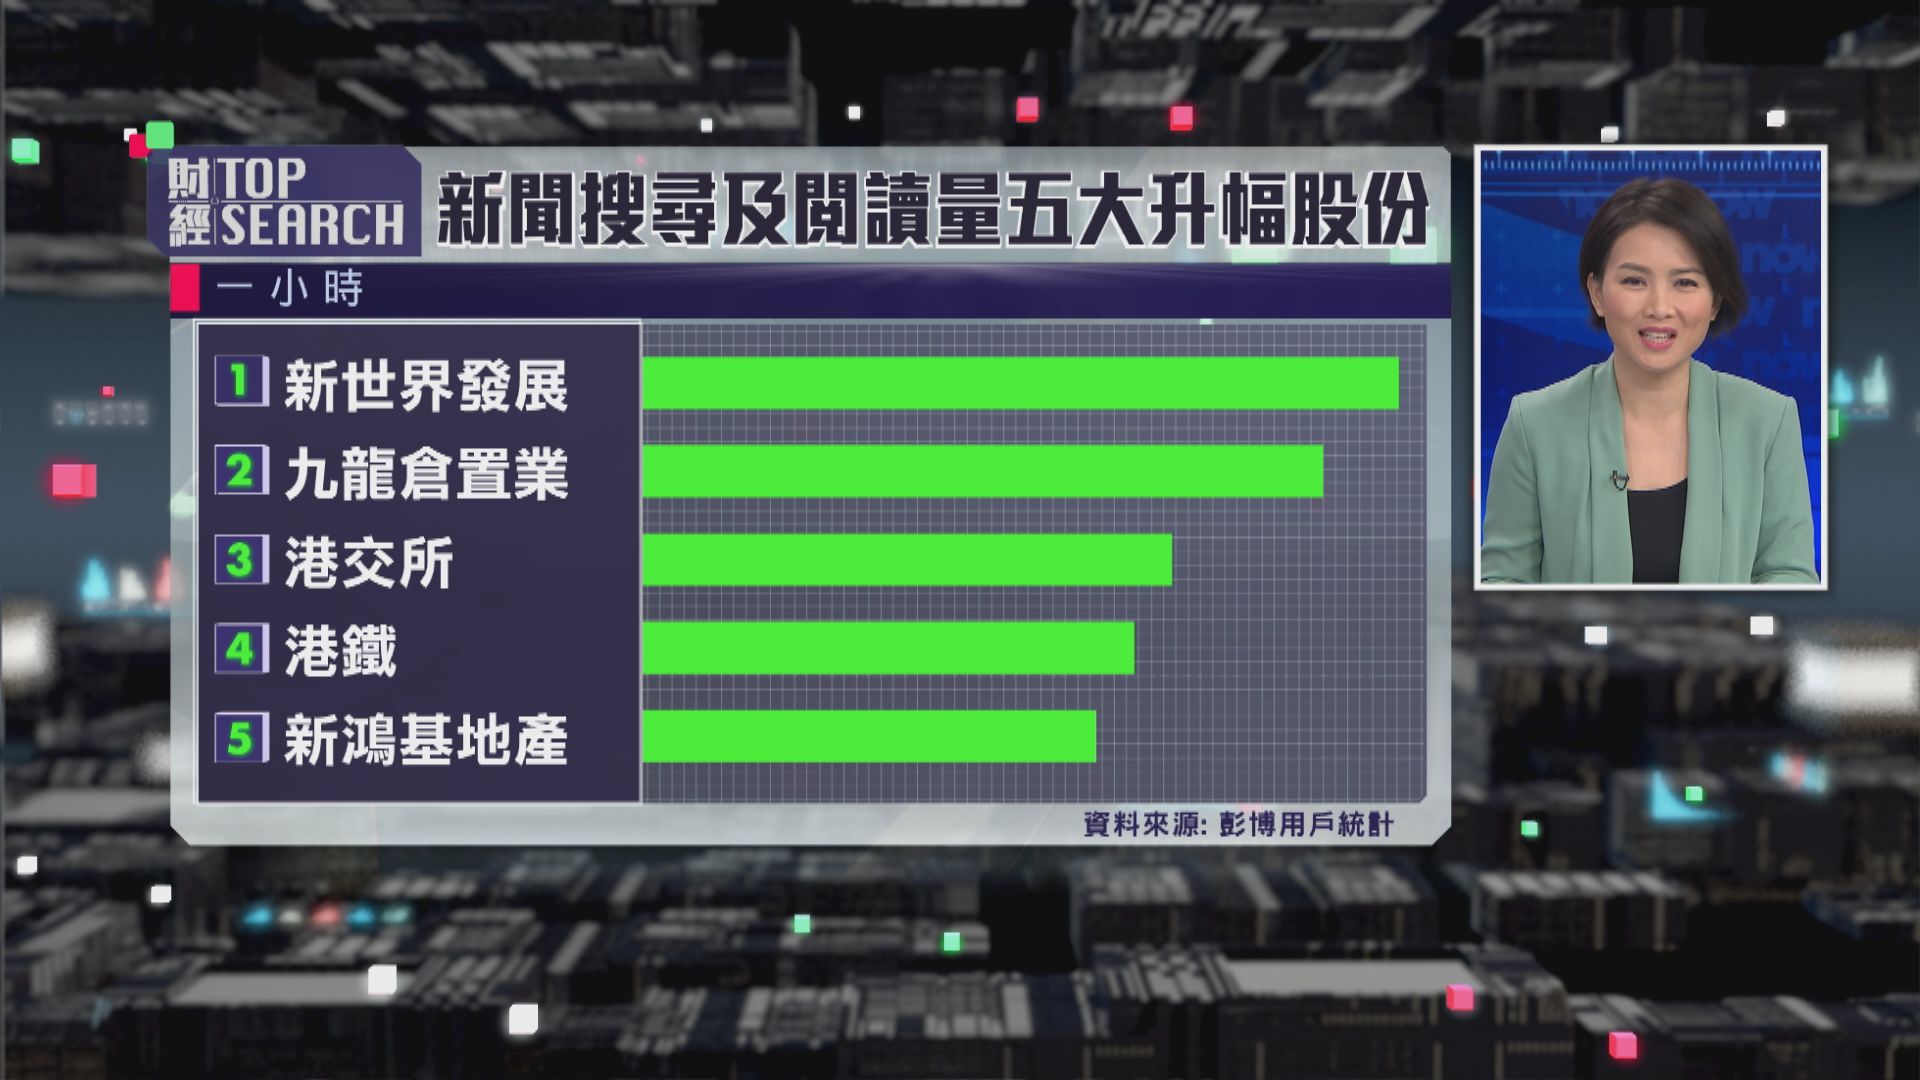 【財經TOP SEARCH】MSCI香港指數今年升幅仲有幾多?